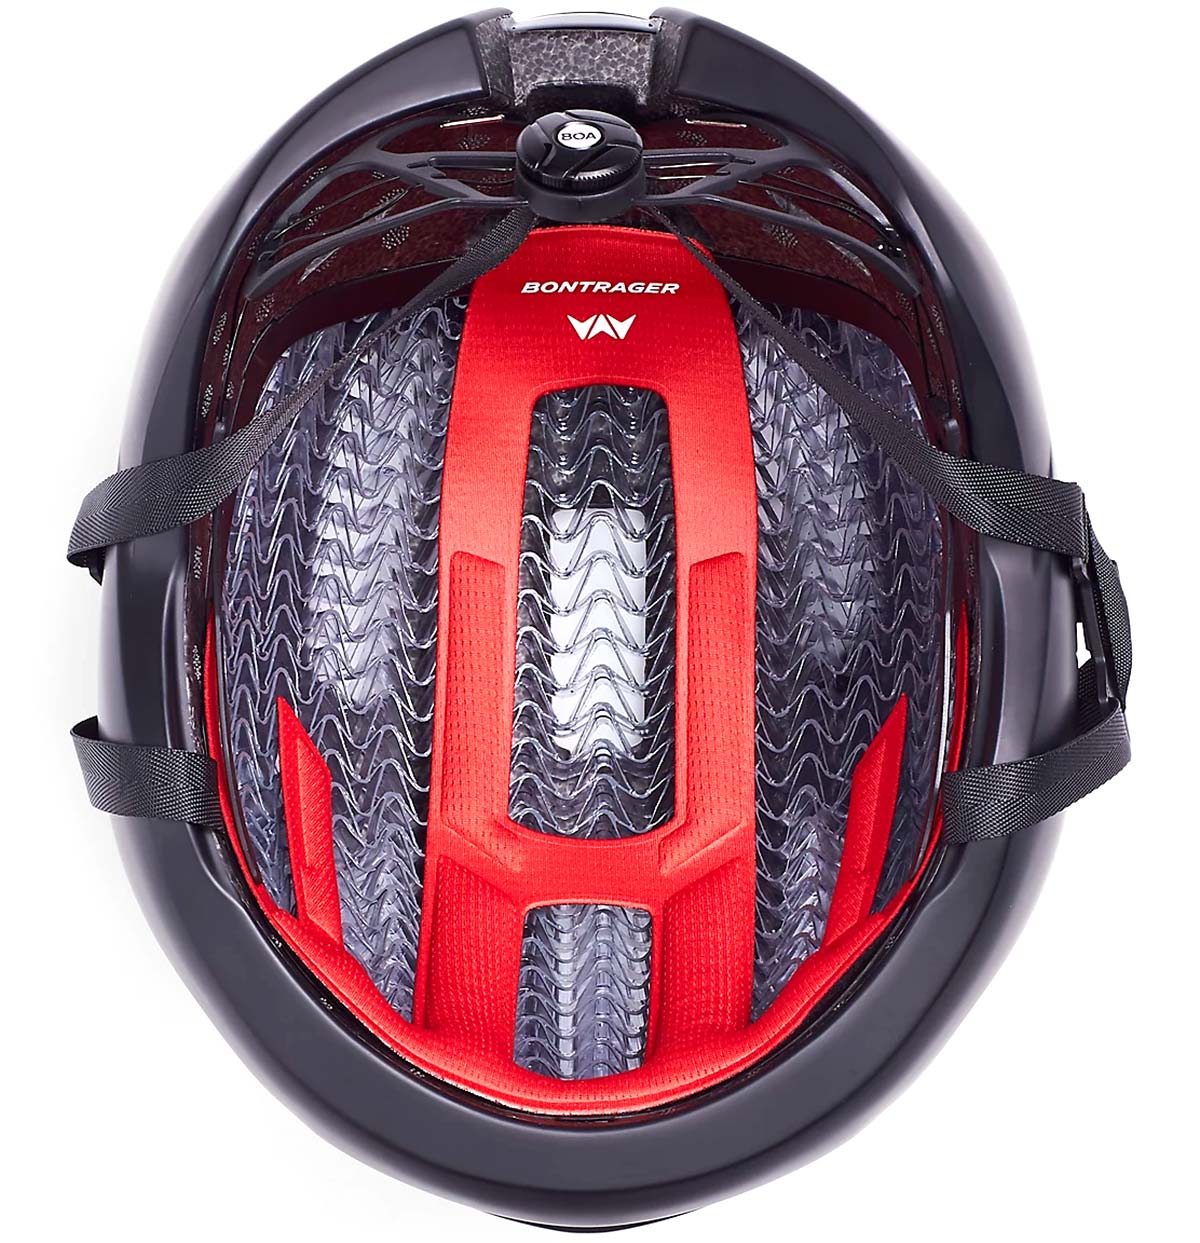 En TodoMountainBike: El casco Bontrager Circuit estrena versión con sistema de protección WaveCel